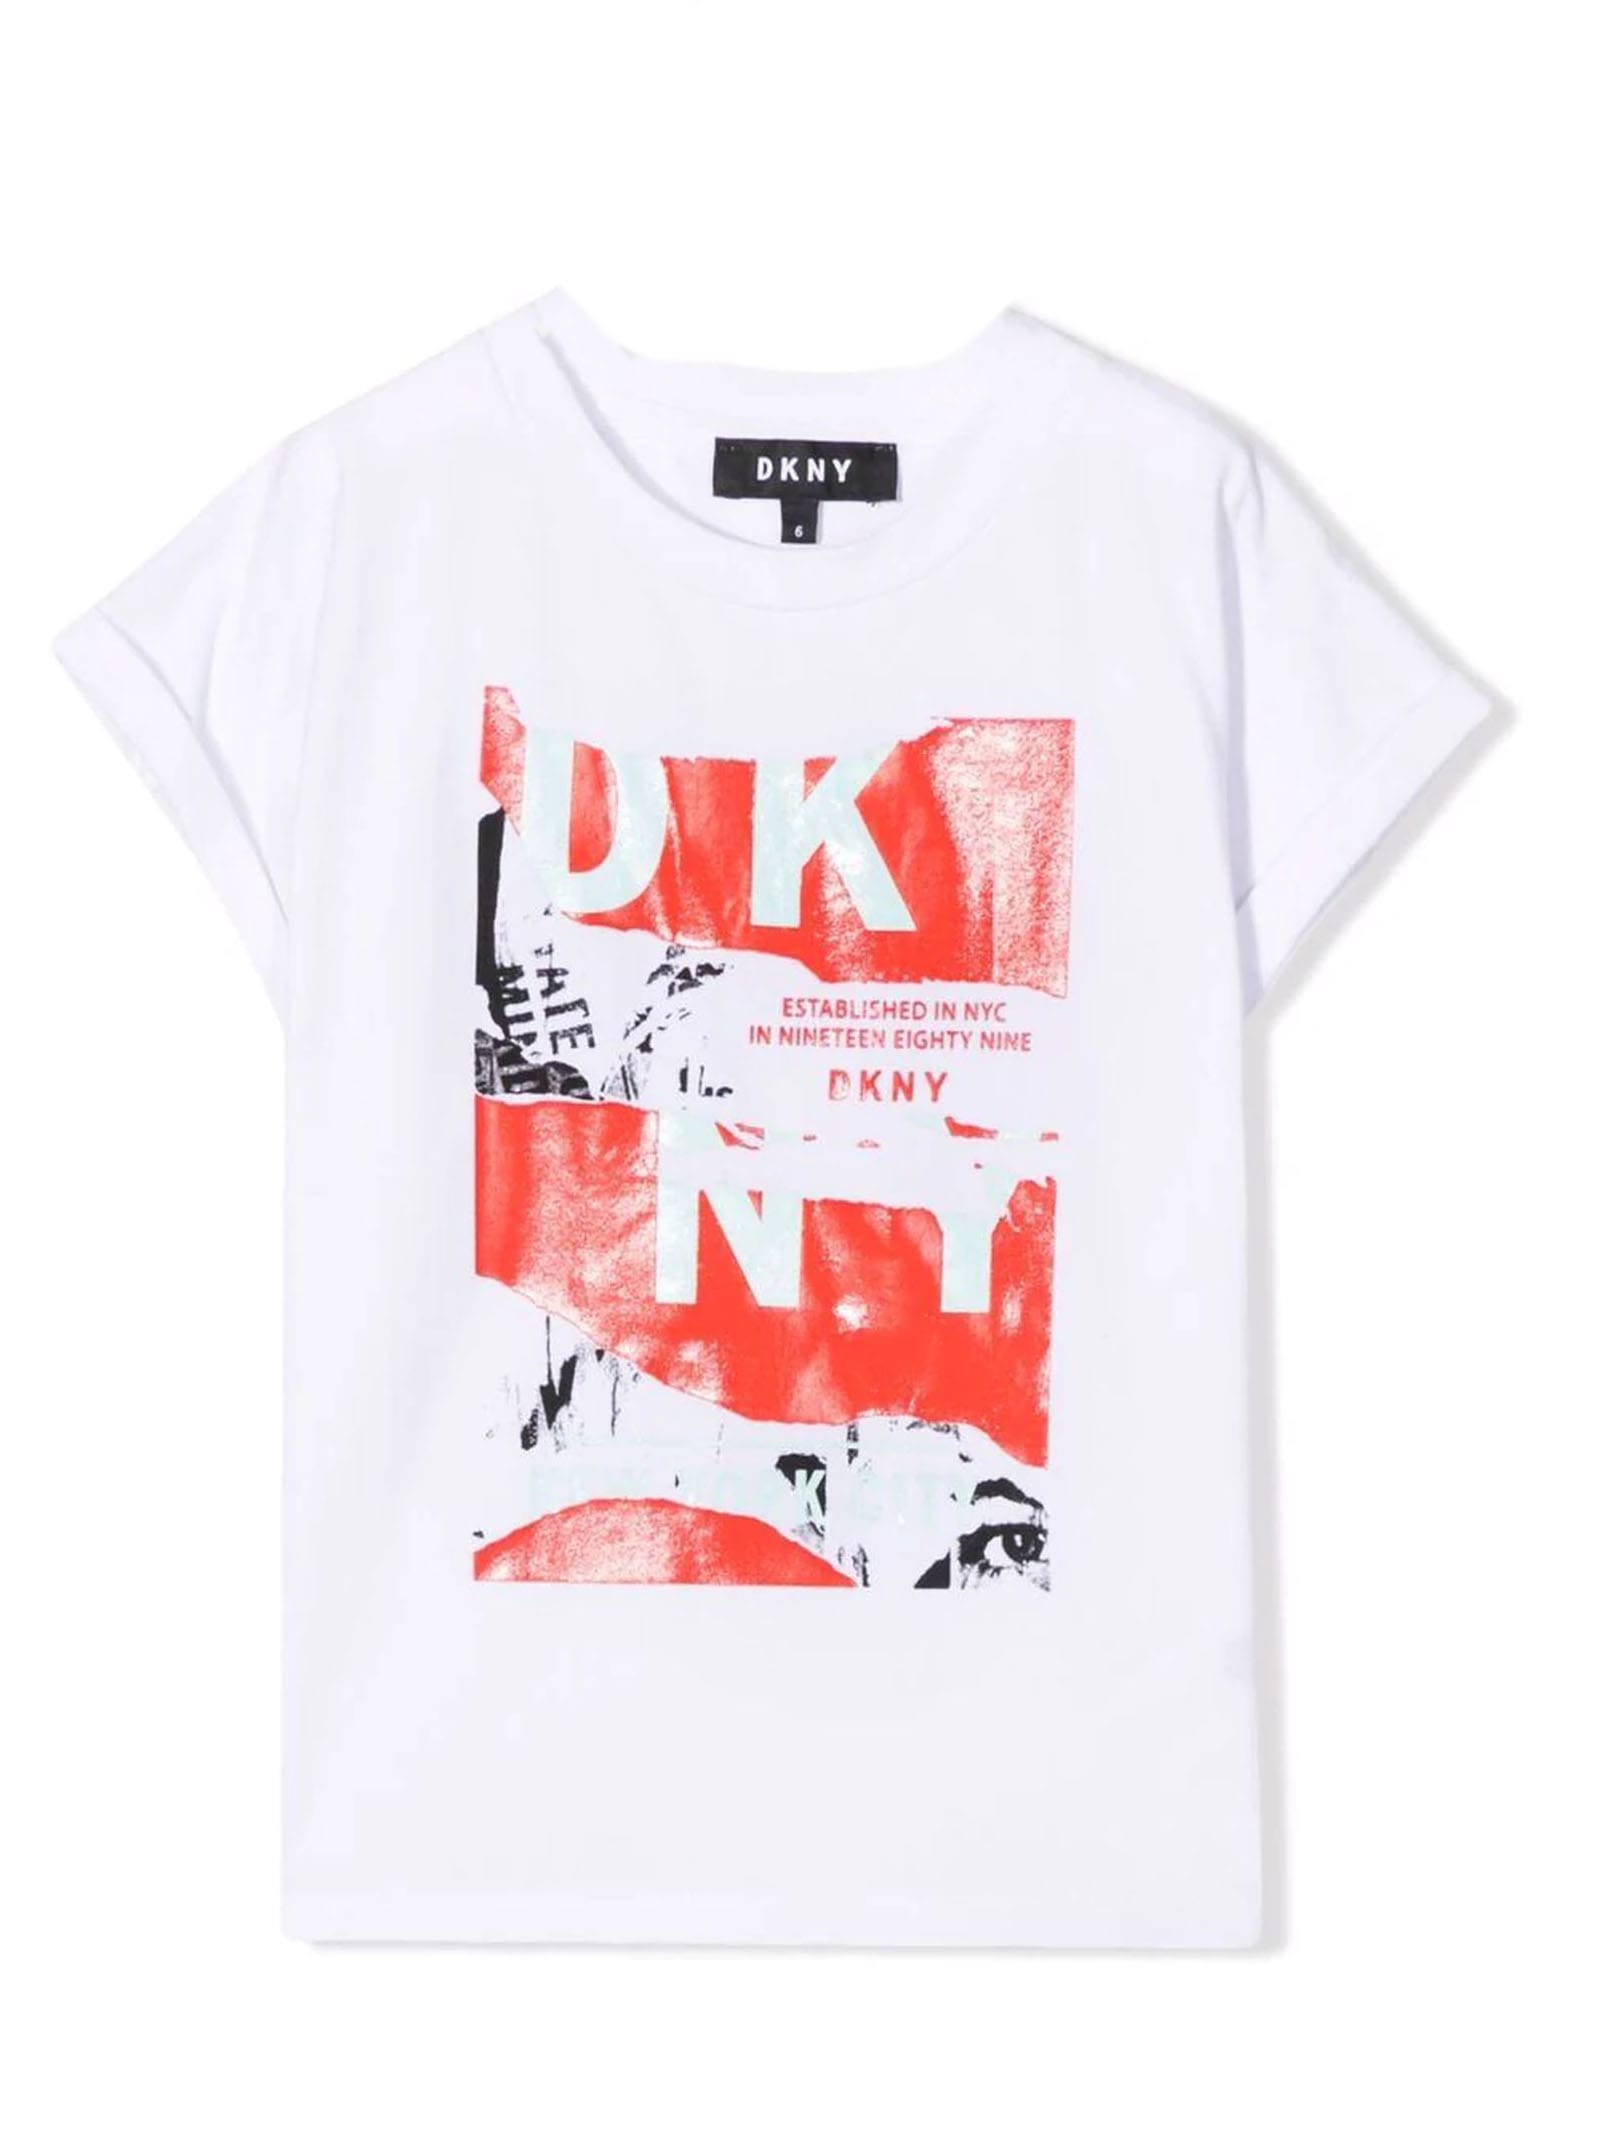 DKNY White Cotton Tshirt